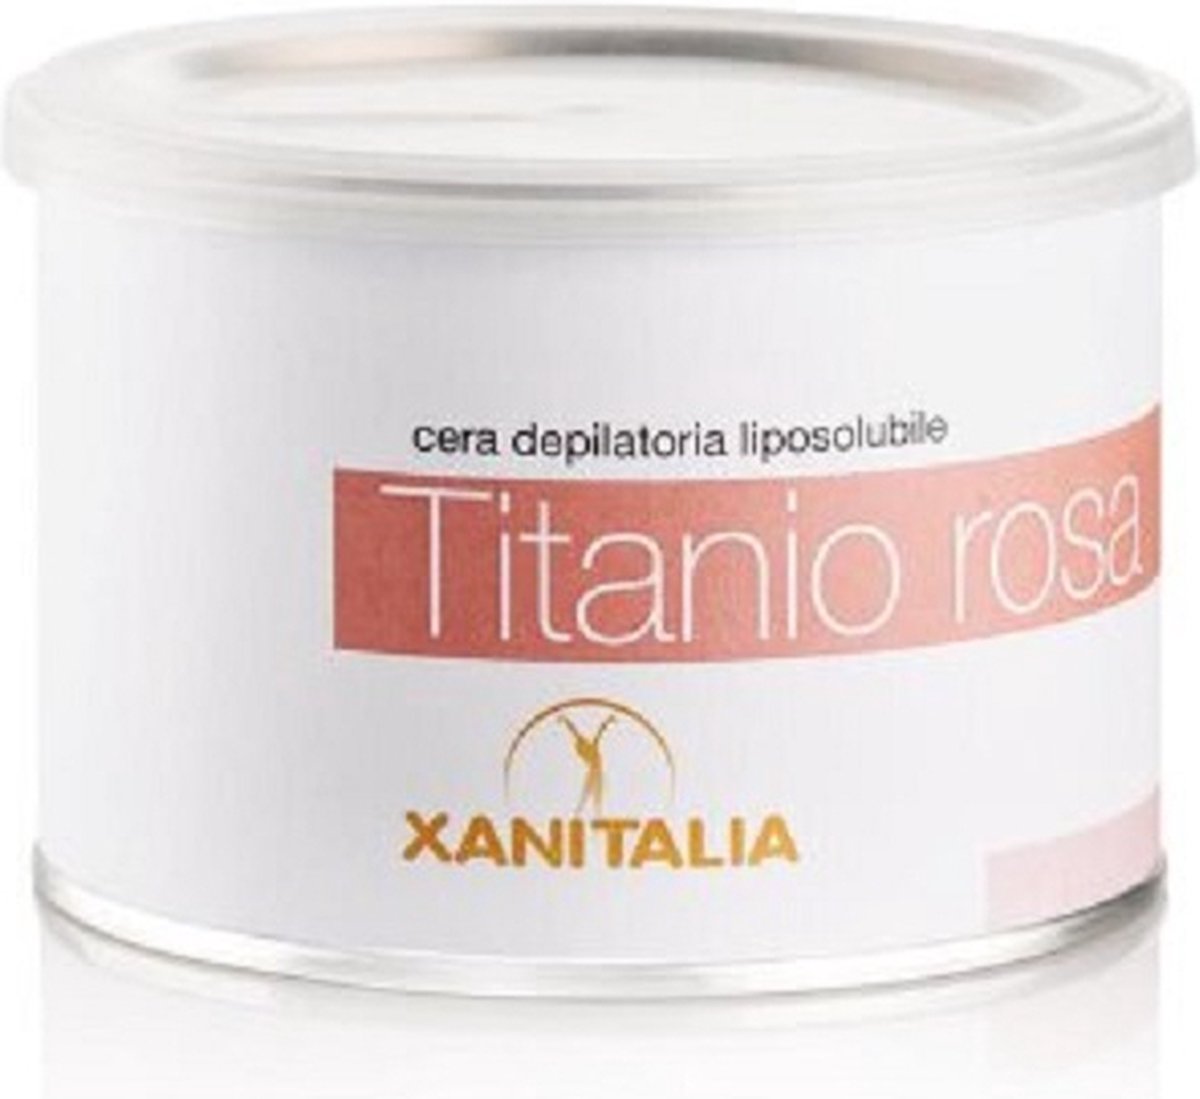 Cera Depilatoria Liposolubile Titanio Rosa Delicate 400ml